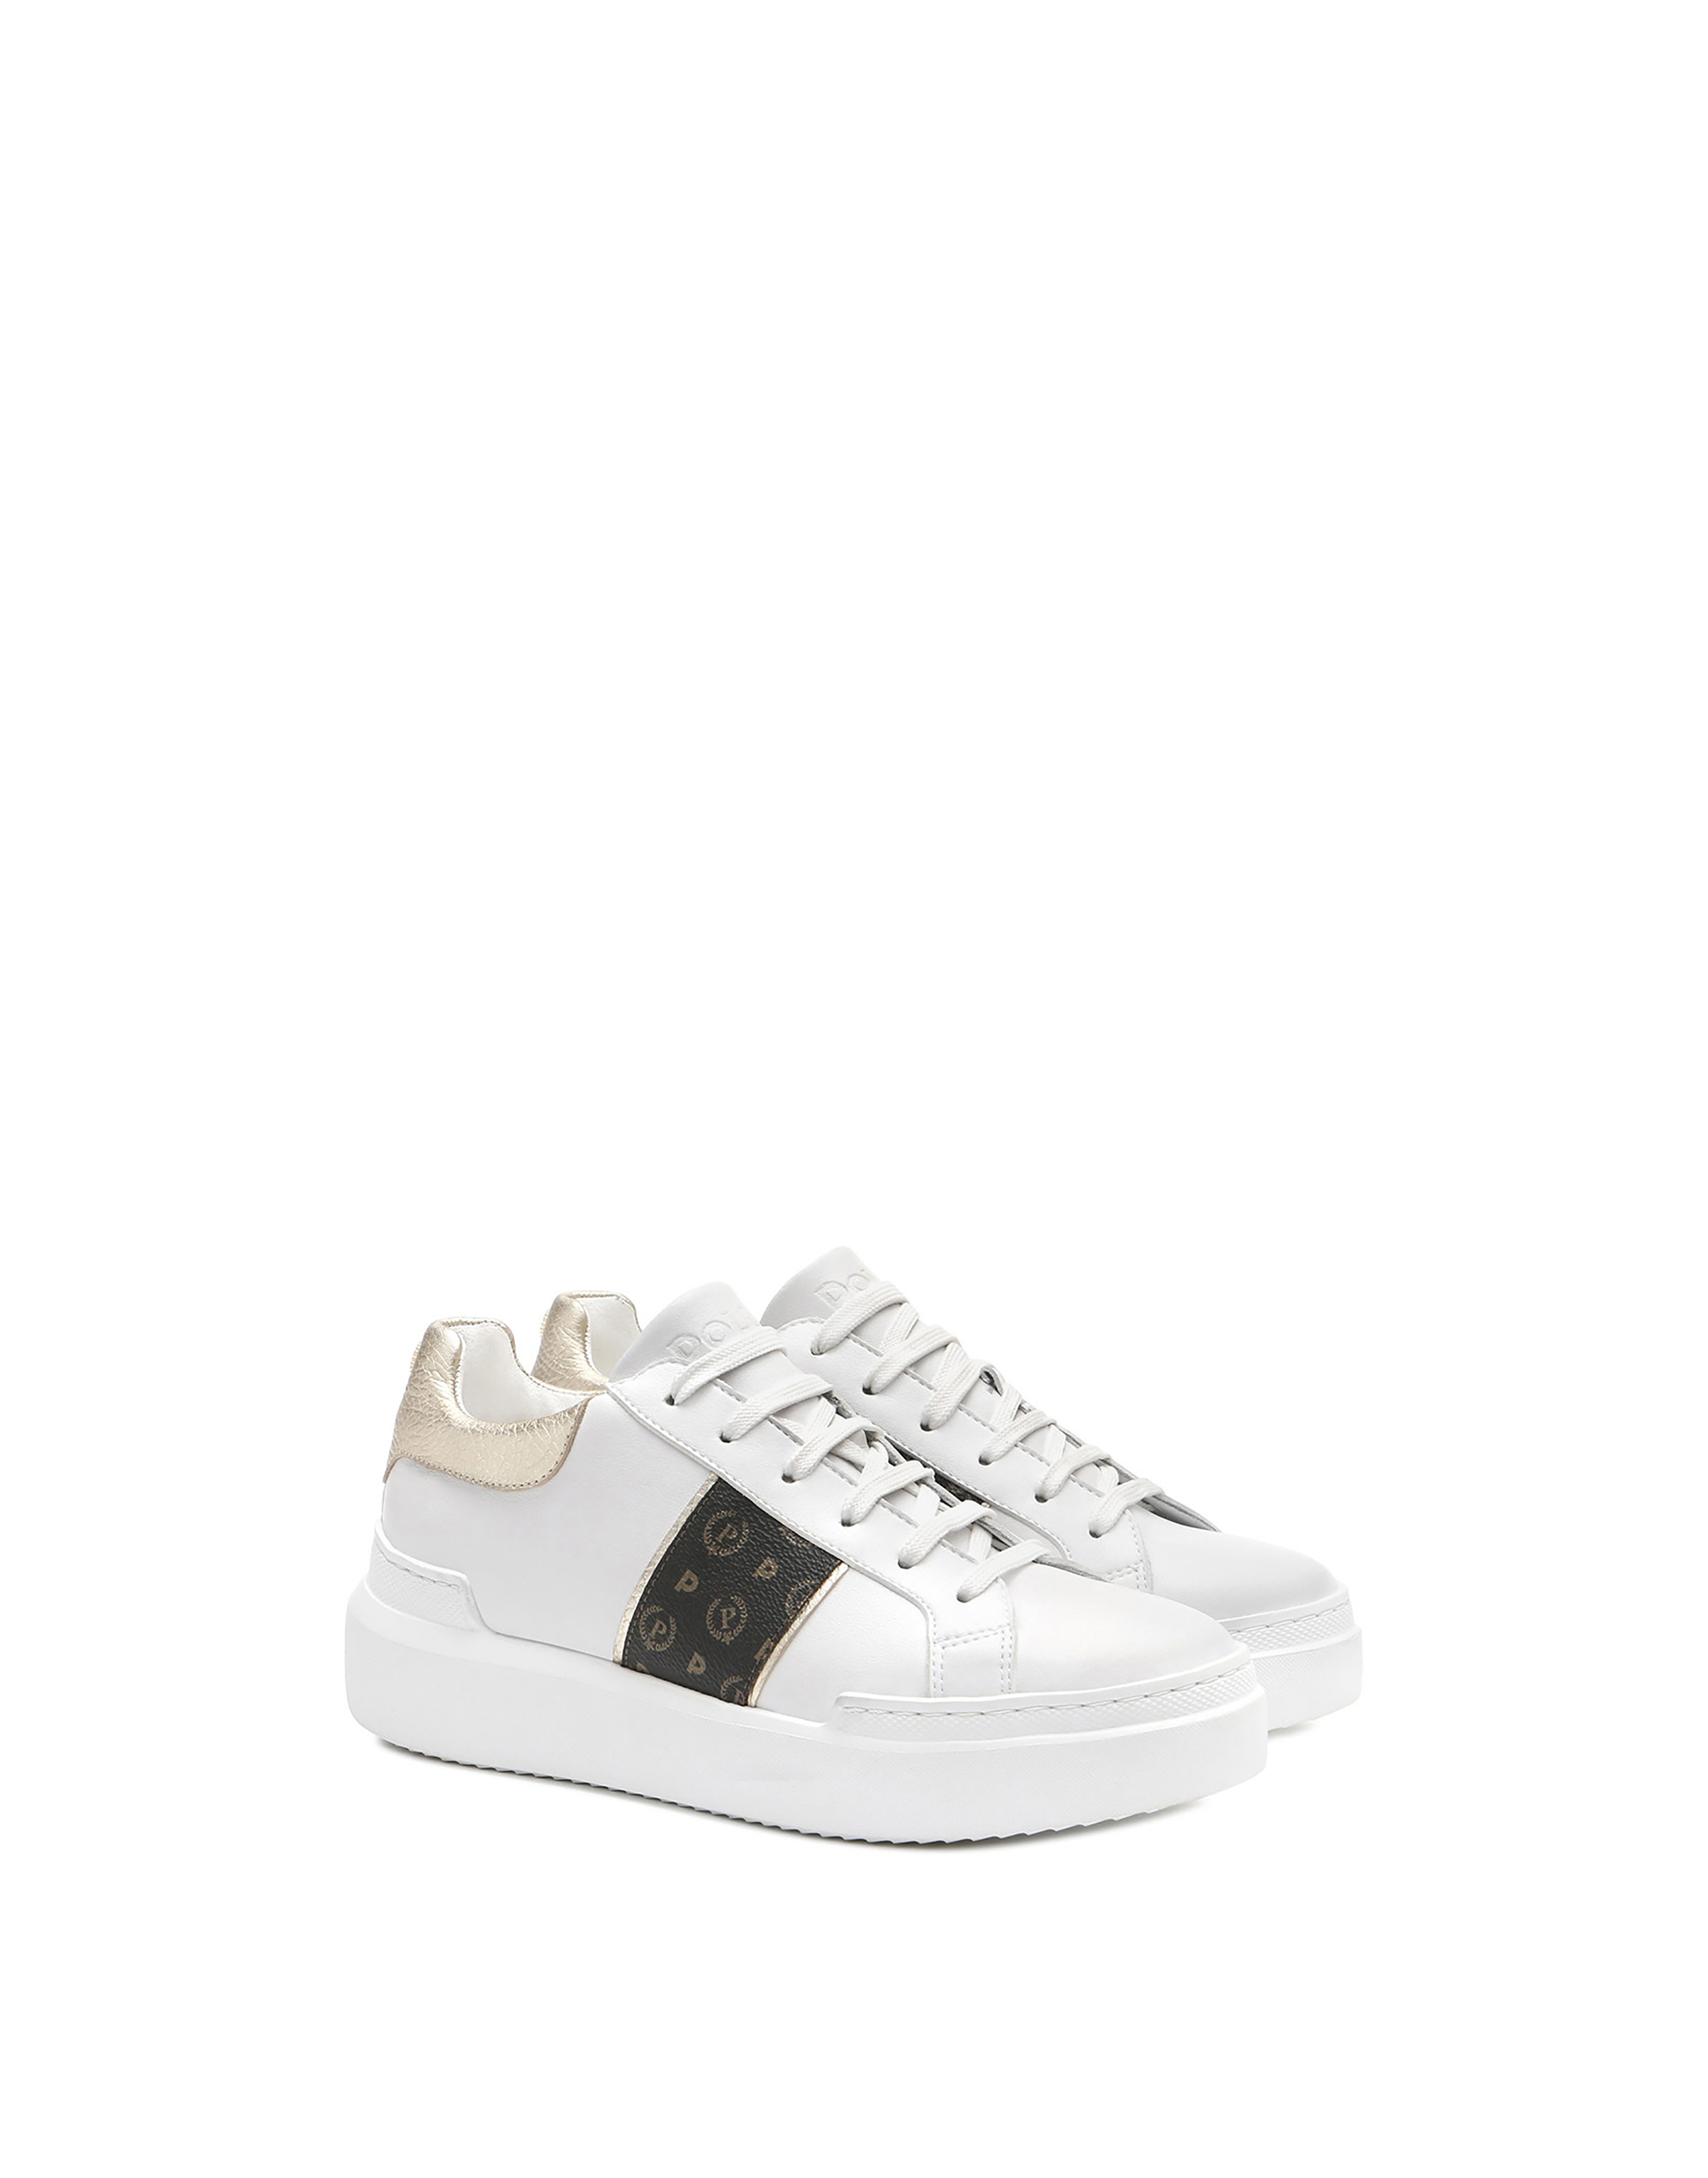 Sneakers Nero/platino/bianco Donna - Pollini Online Boutique